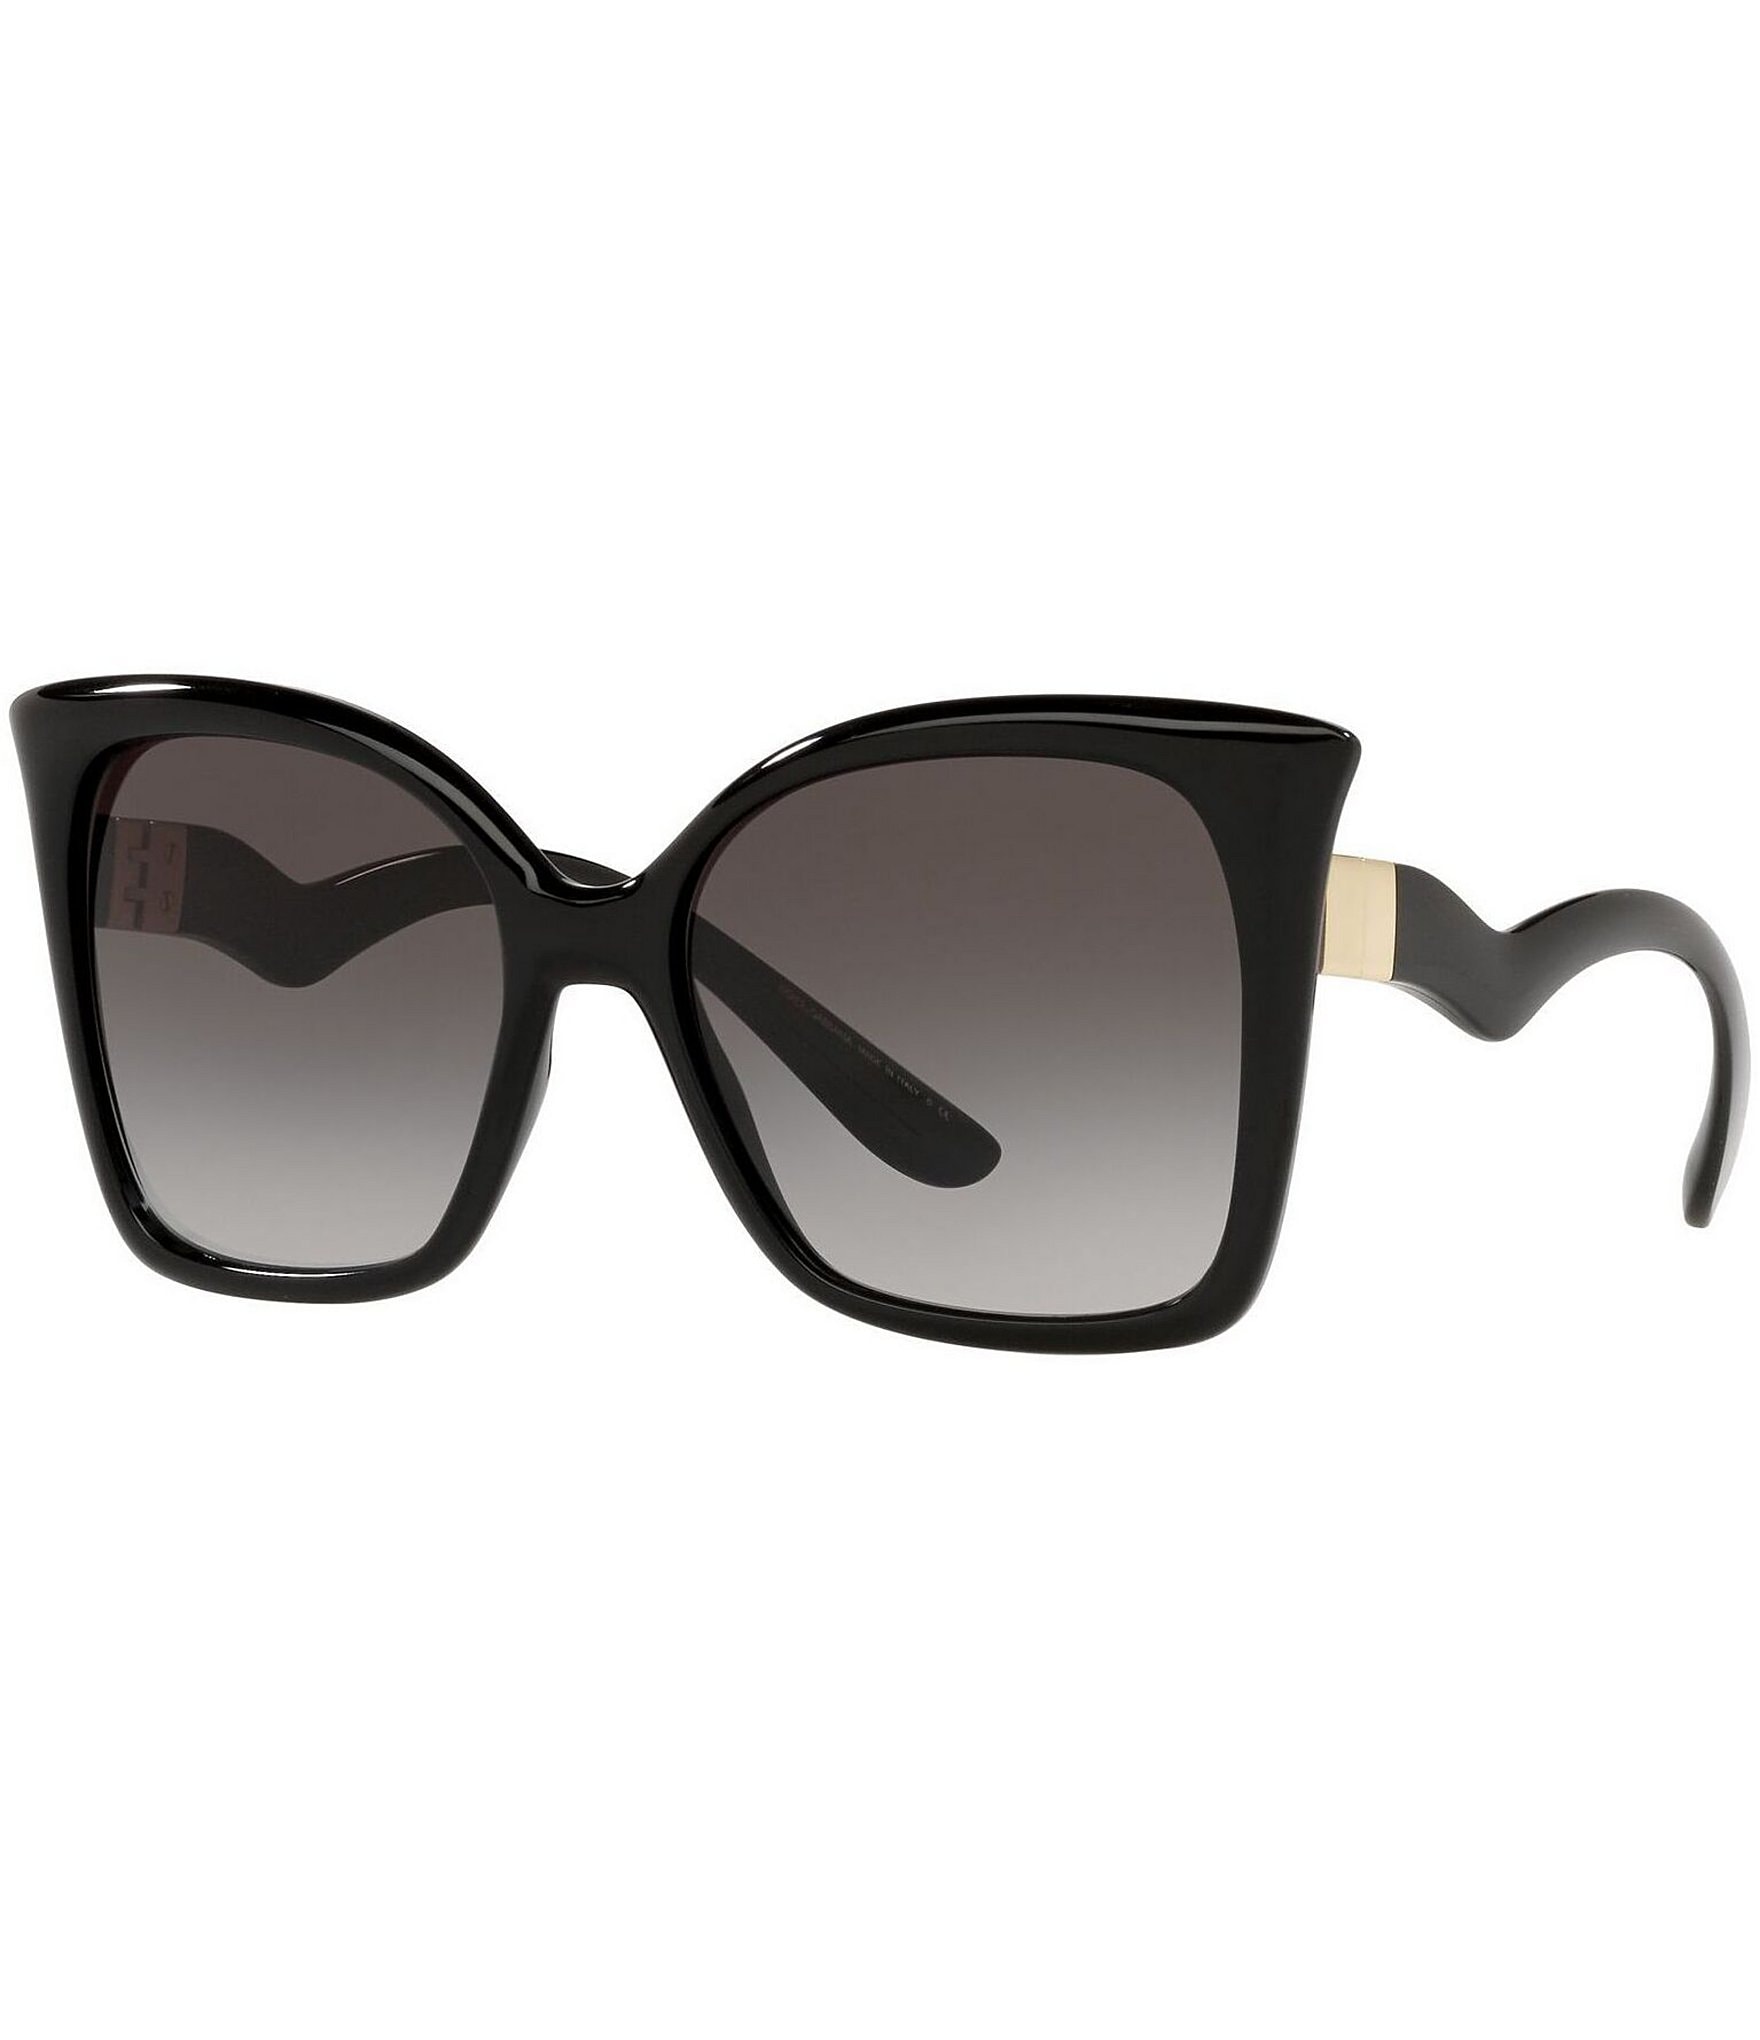 Hofte klynke rigtig meget Dolce & Gabbana Women's Dg6168 56mm Butterfly Sunglasses | Dillard's